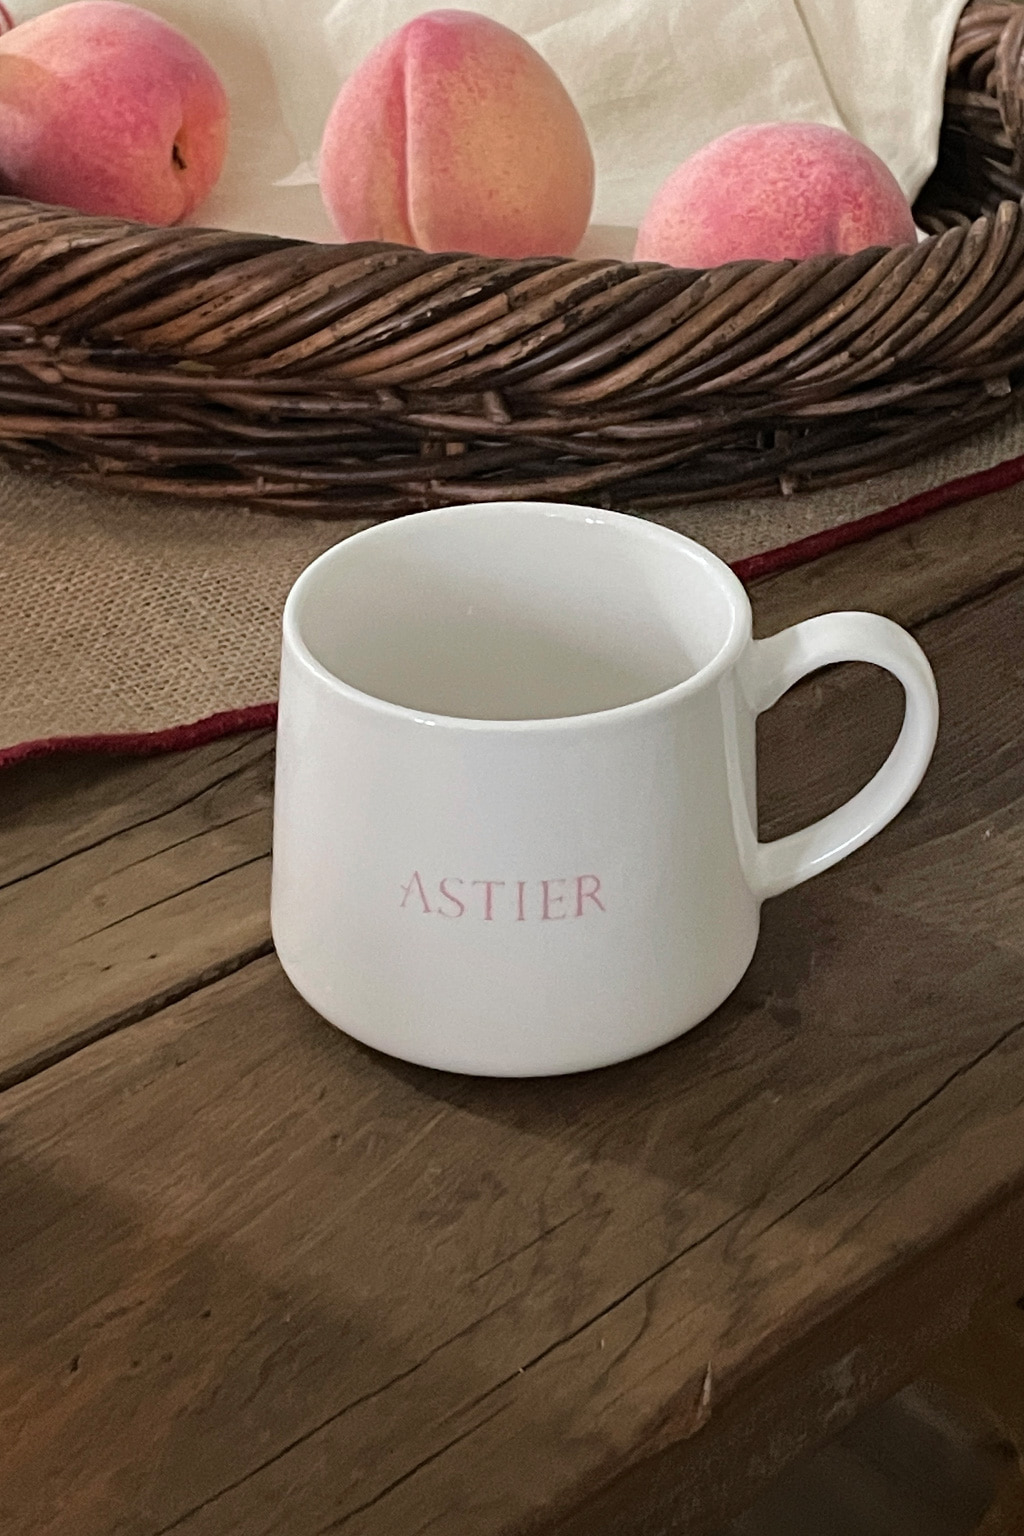 [ASTIER] astier mug cup